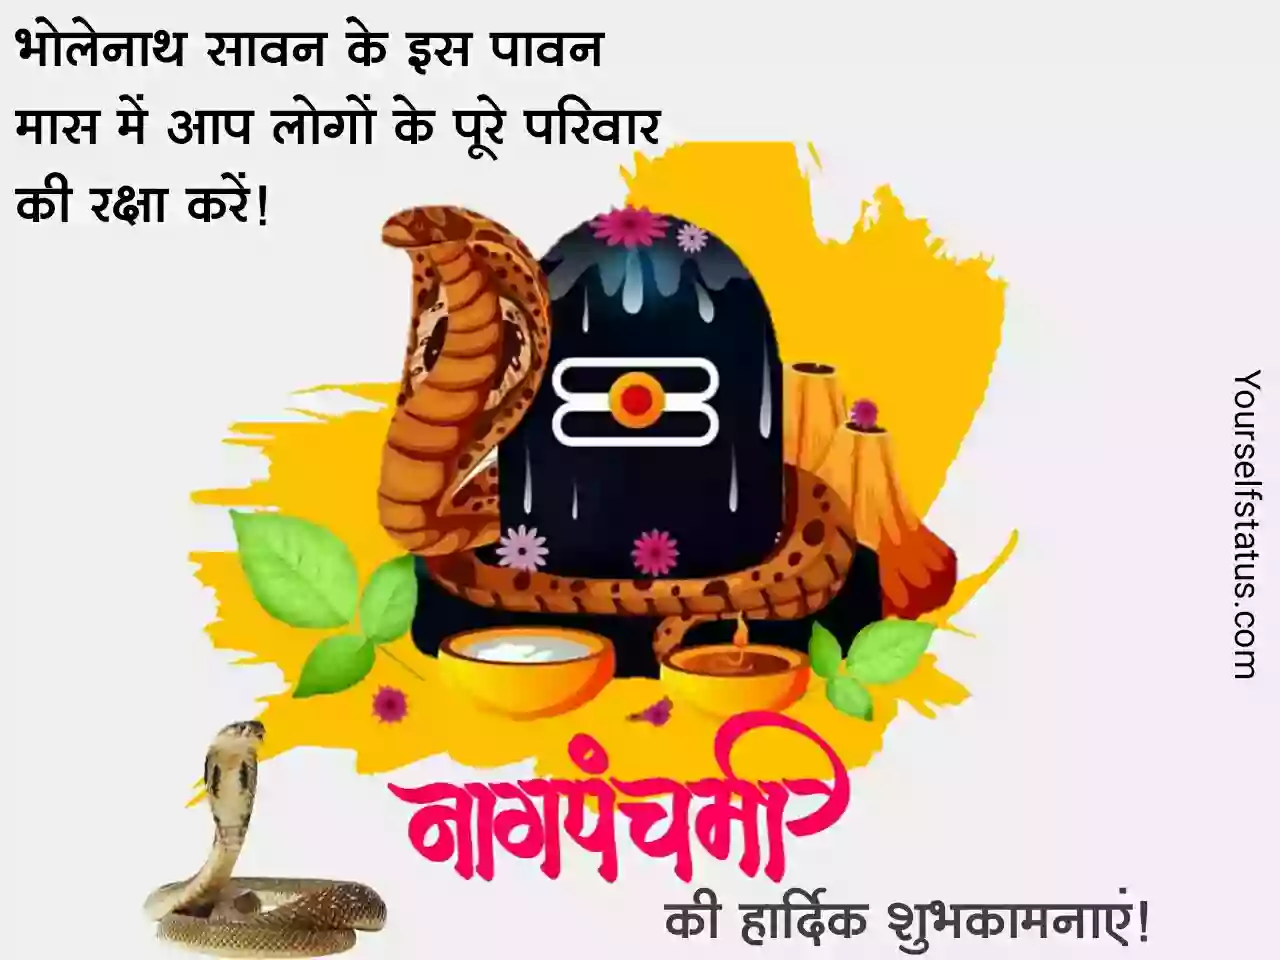 Nag panchami Images in hindi